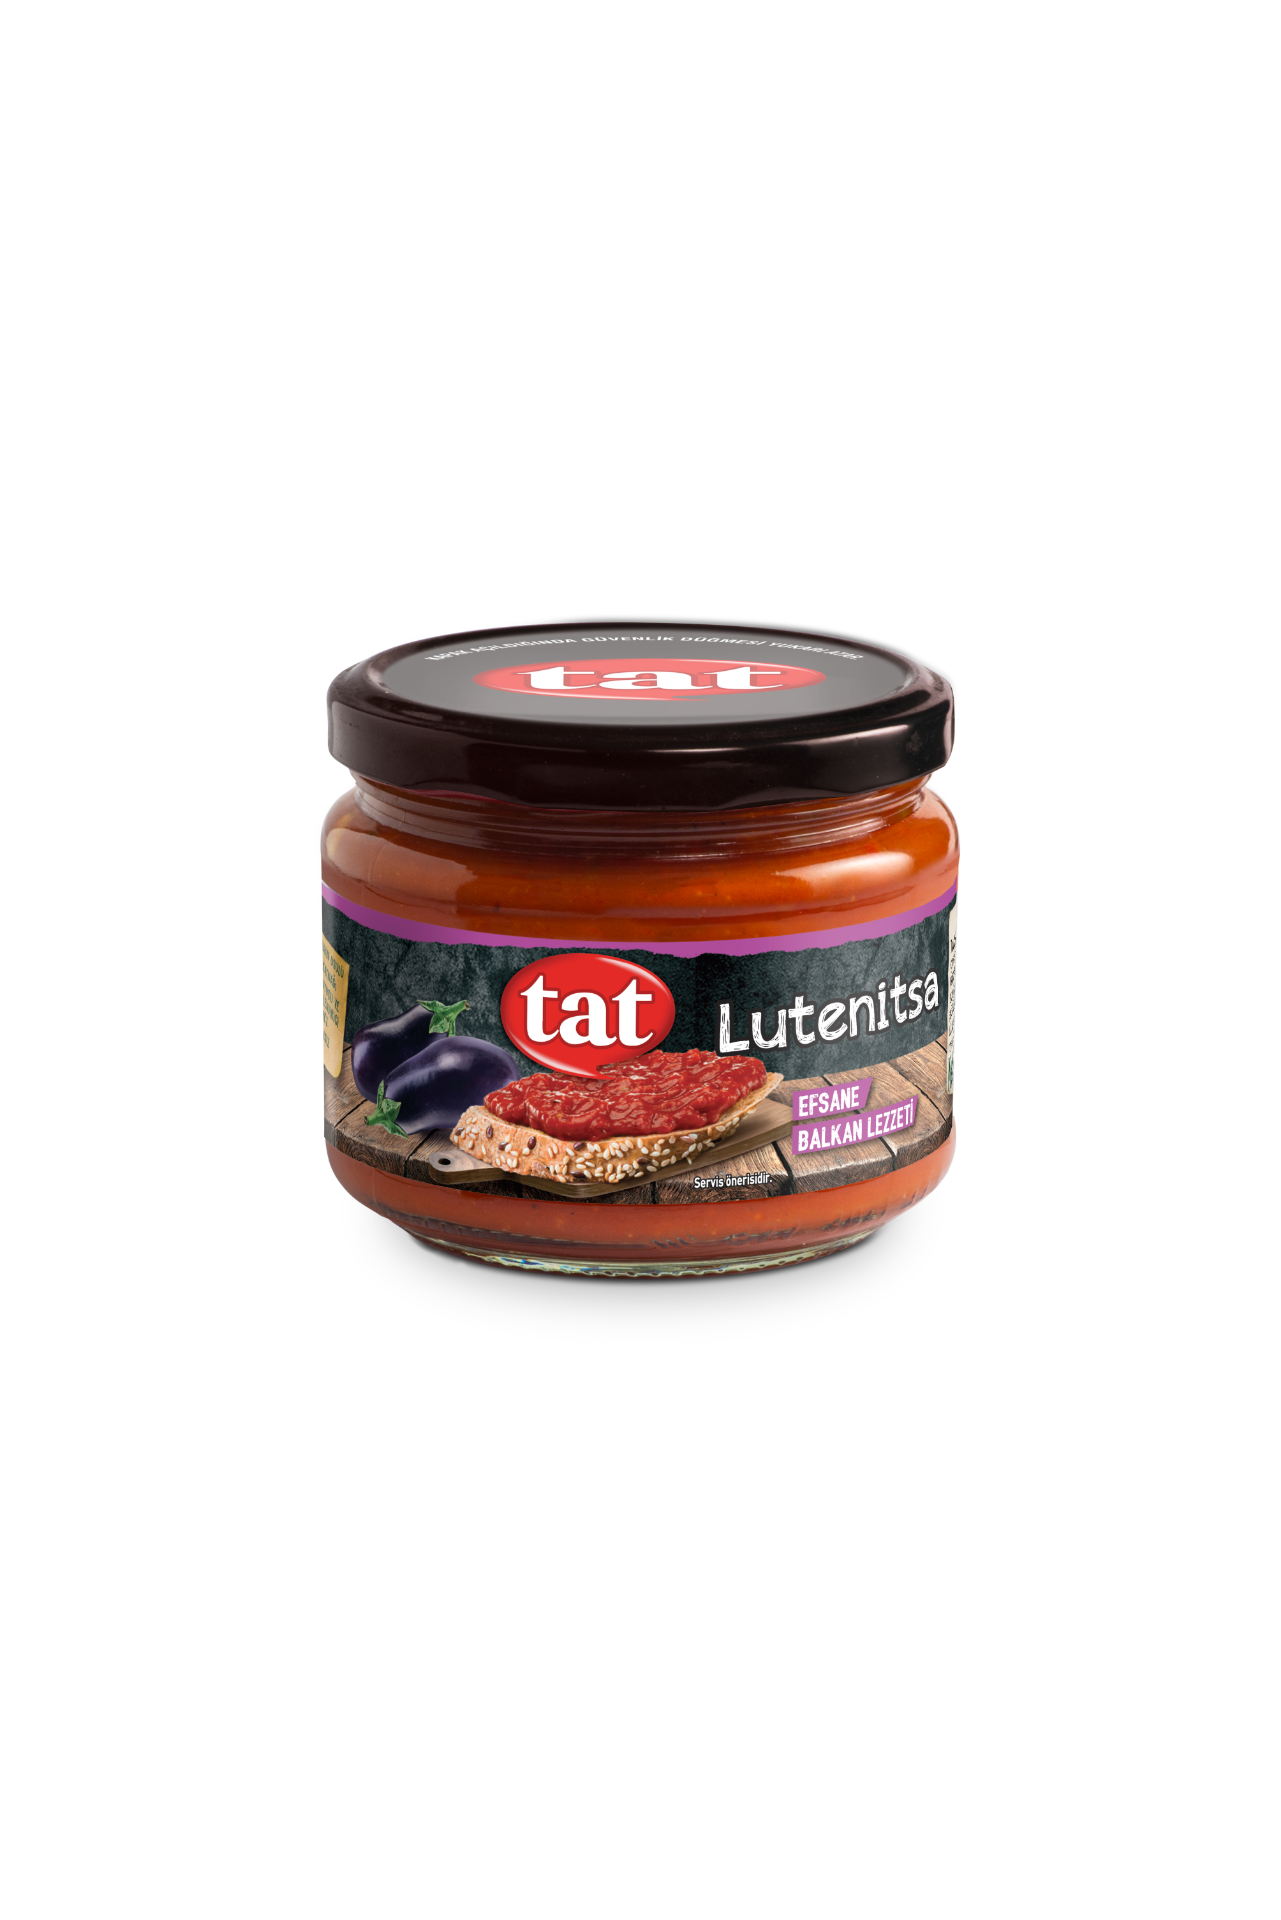 Tat Lutenitsa Balkan Sauce